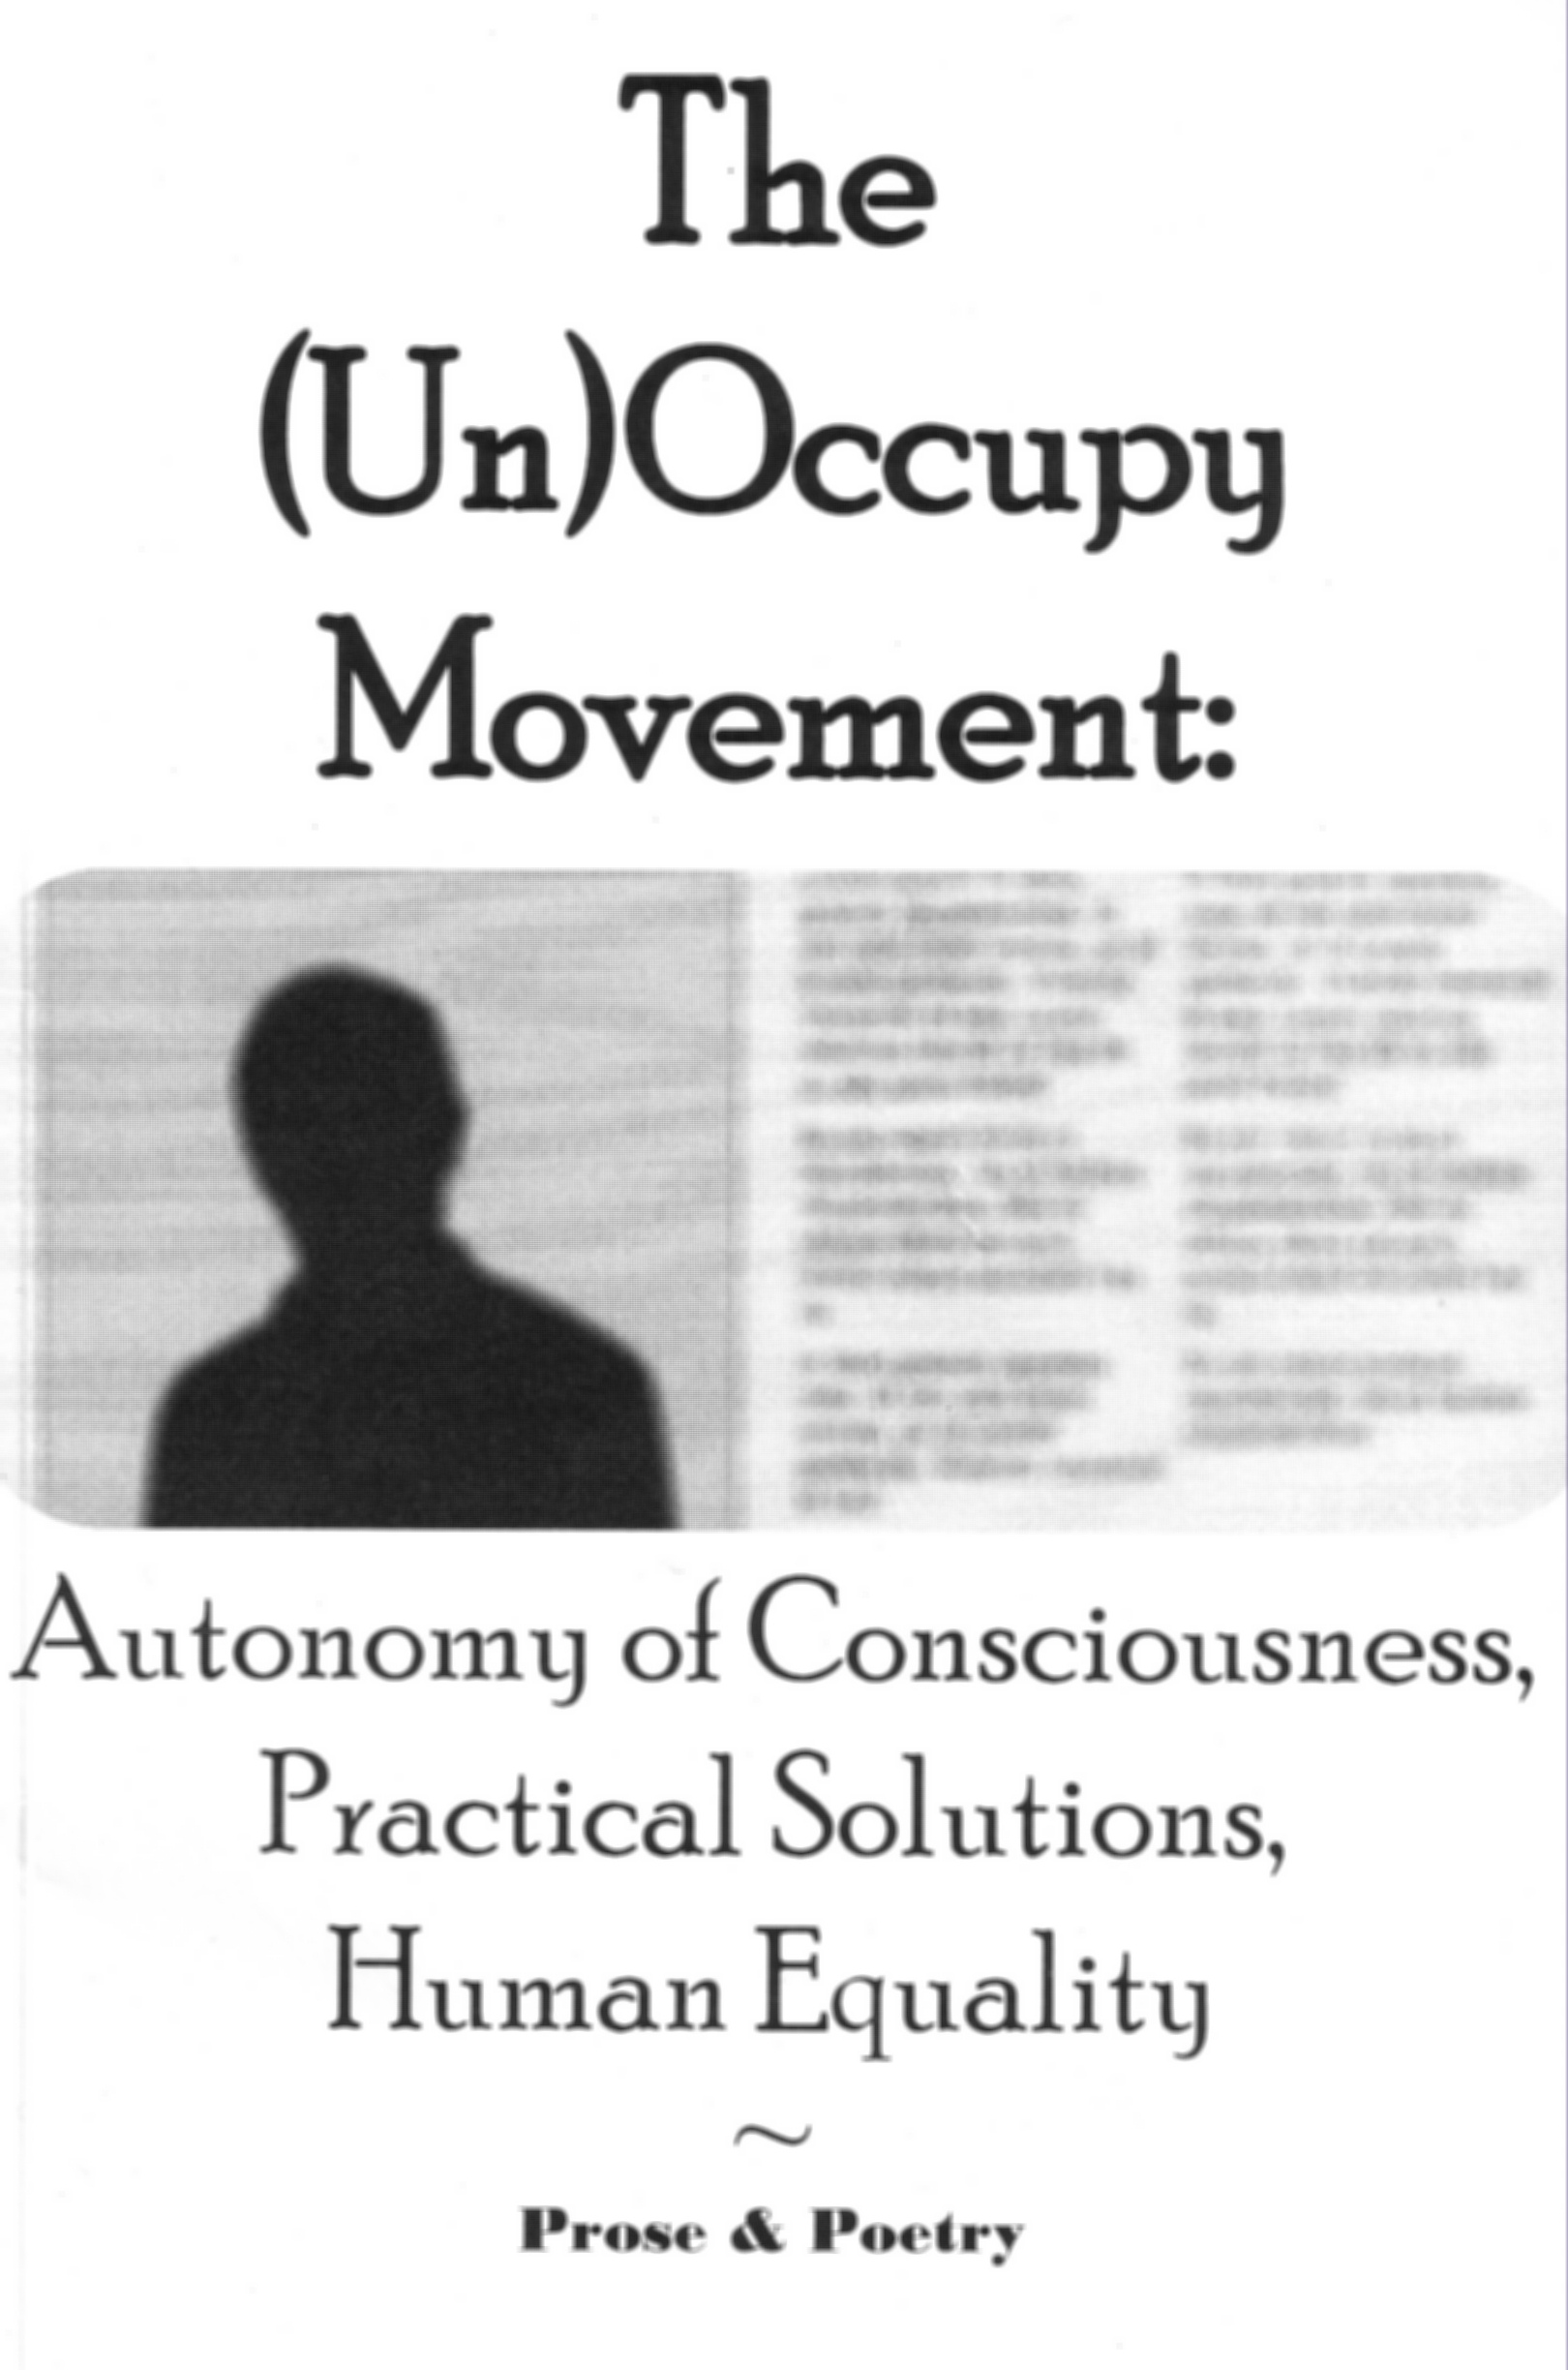 (un)occupy cover02